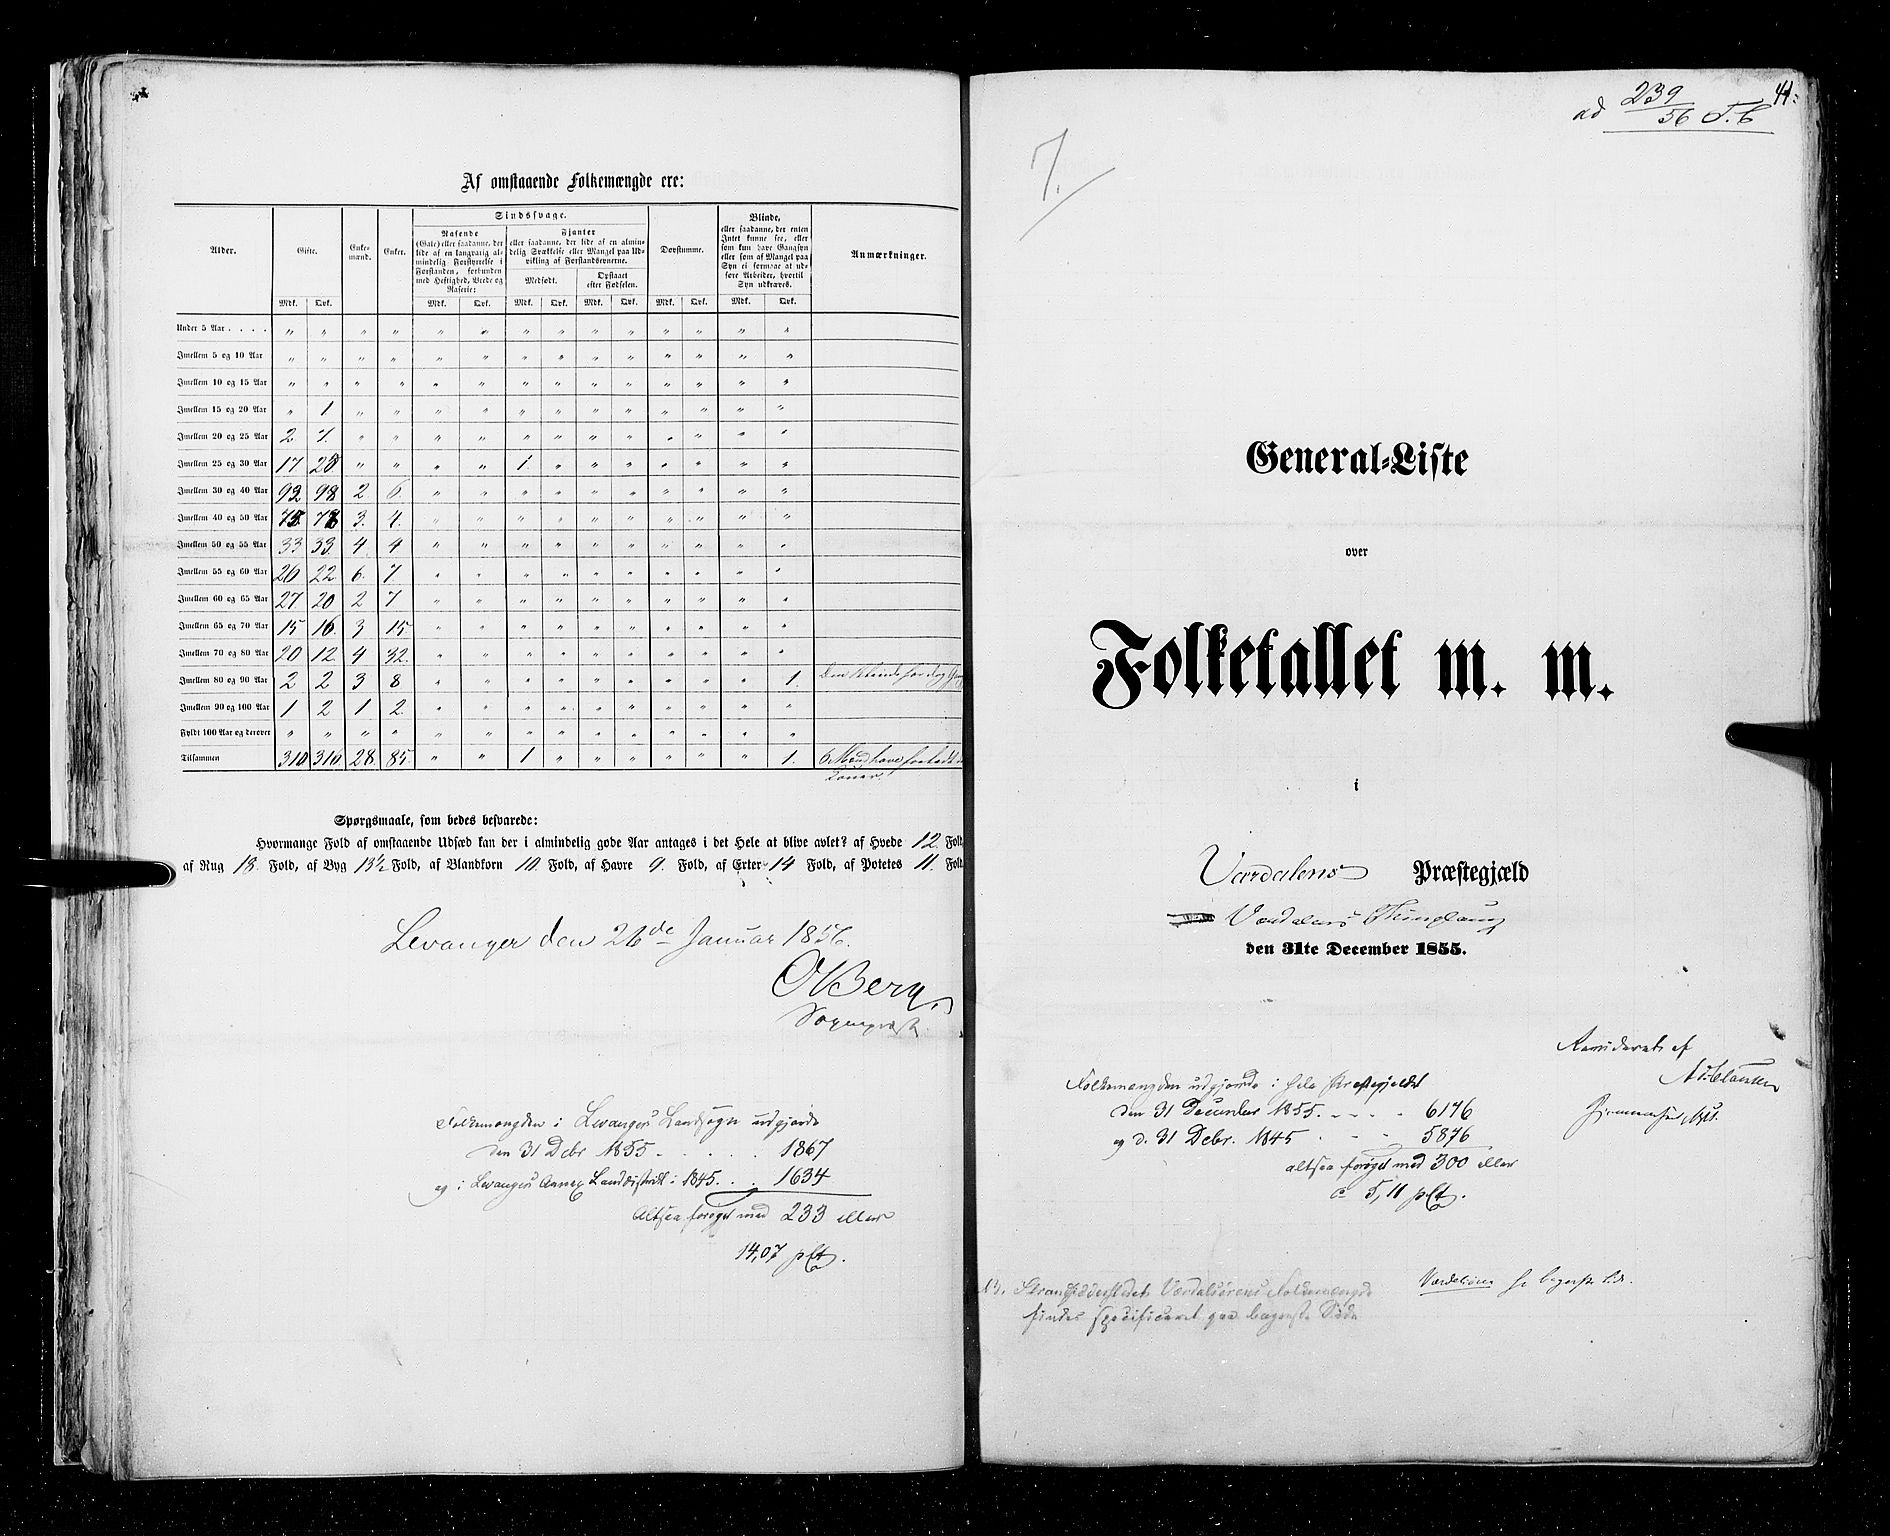 RA, Folketellingen 1855, bind 6A: Nordre Trondhjem amt og Nordland amt, 1855, s. 41